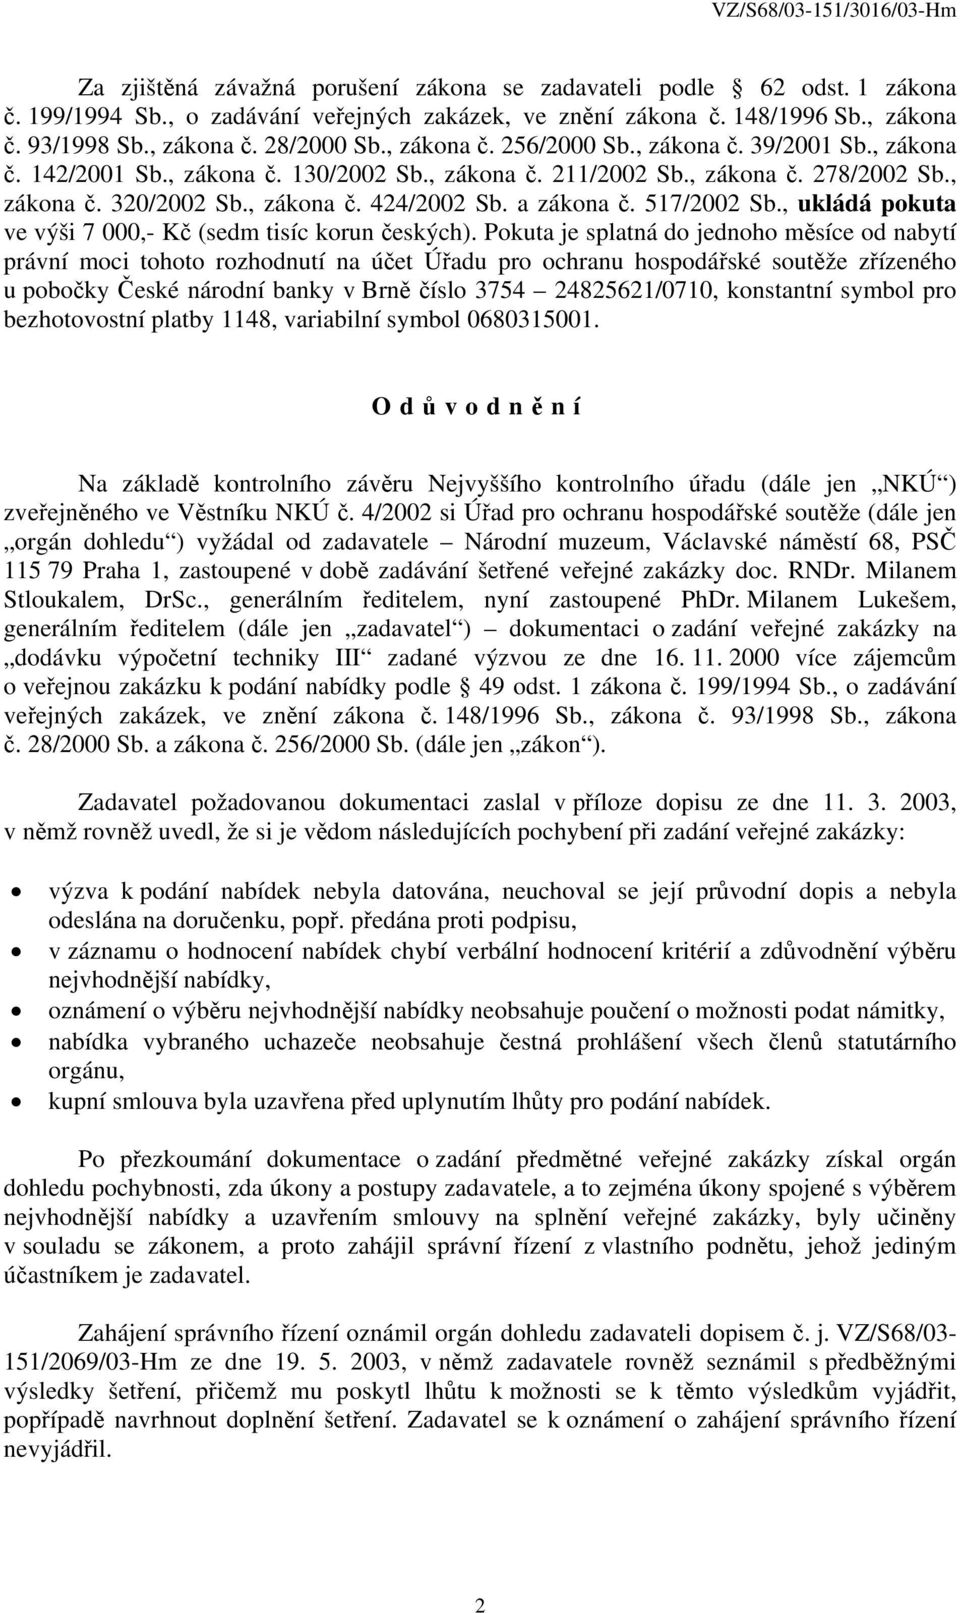 a zákona č. 517/2002 Sb., ukládá pokuta ve výši 7 000,- Kč (sedm tisíc korun českých).